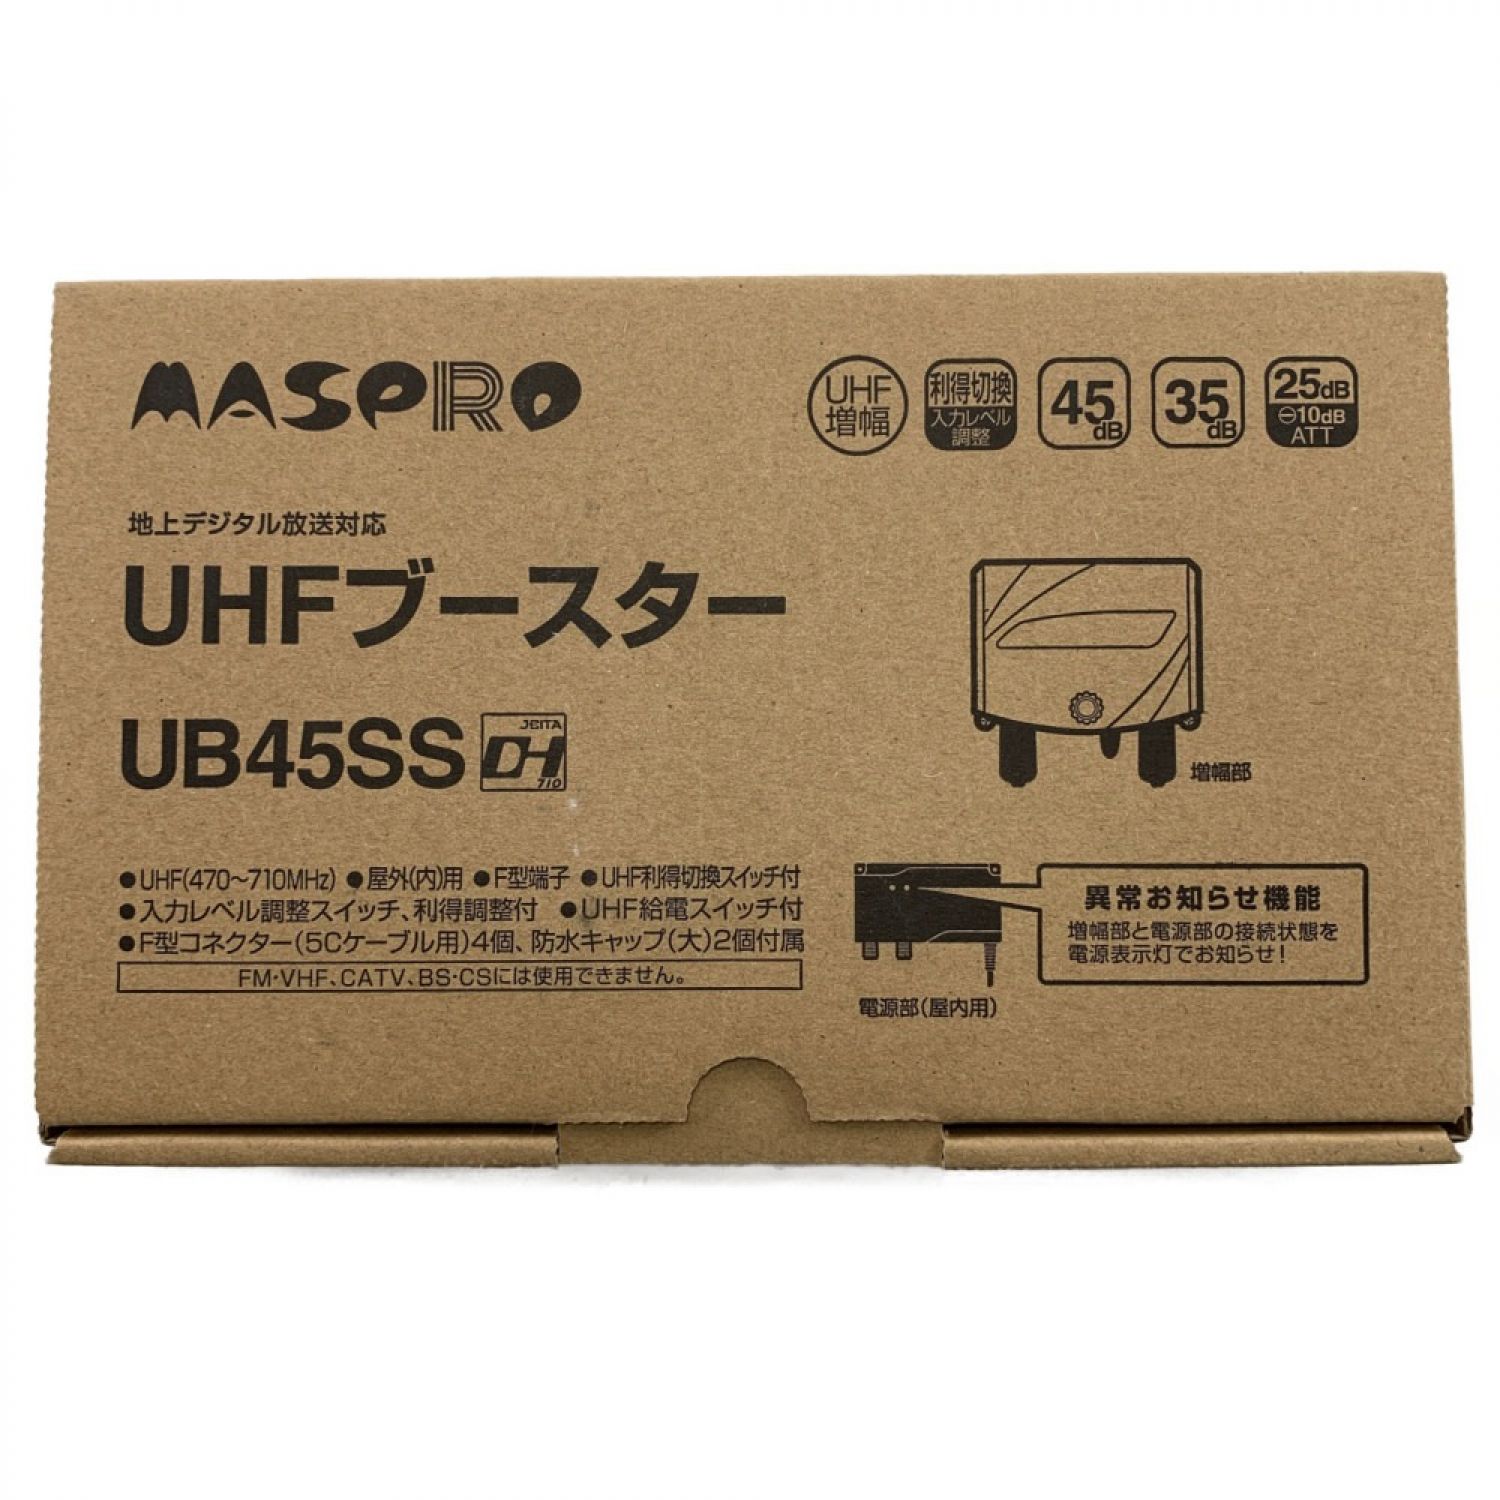 MASPRO マスプロ UHFブースター UB45SS 開封未使用品 Sランク